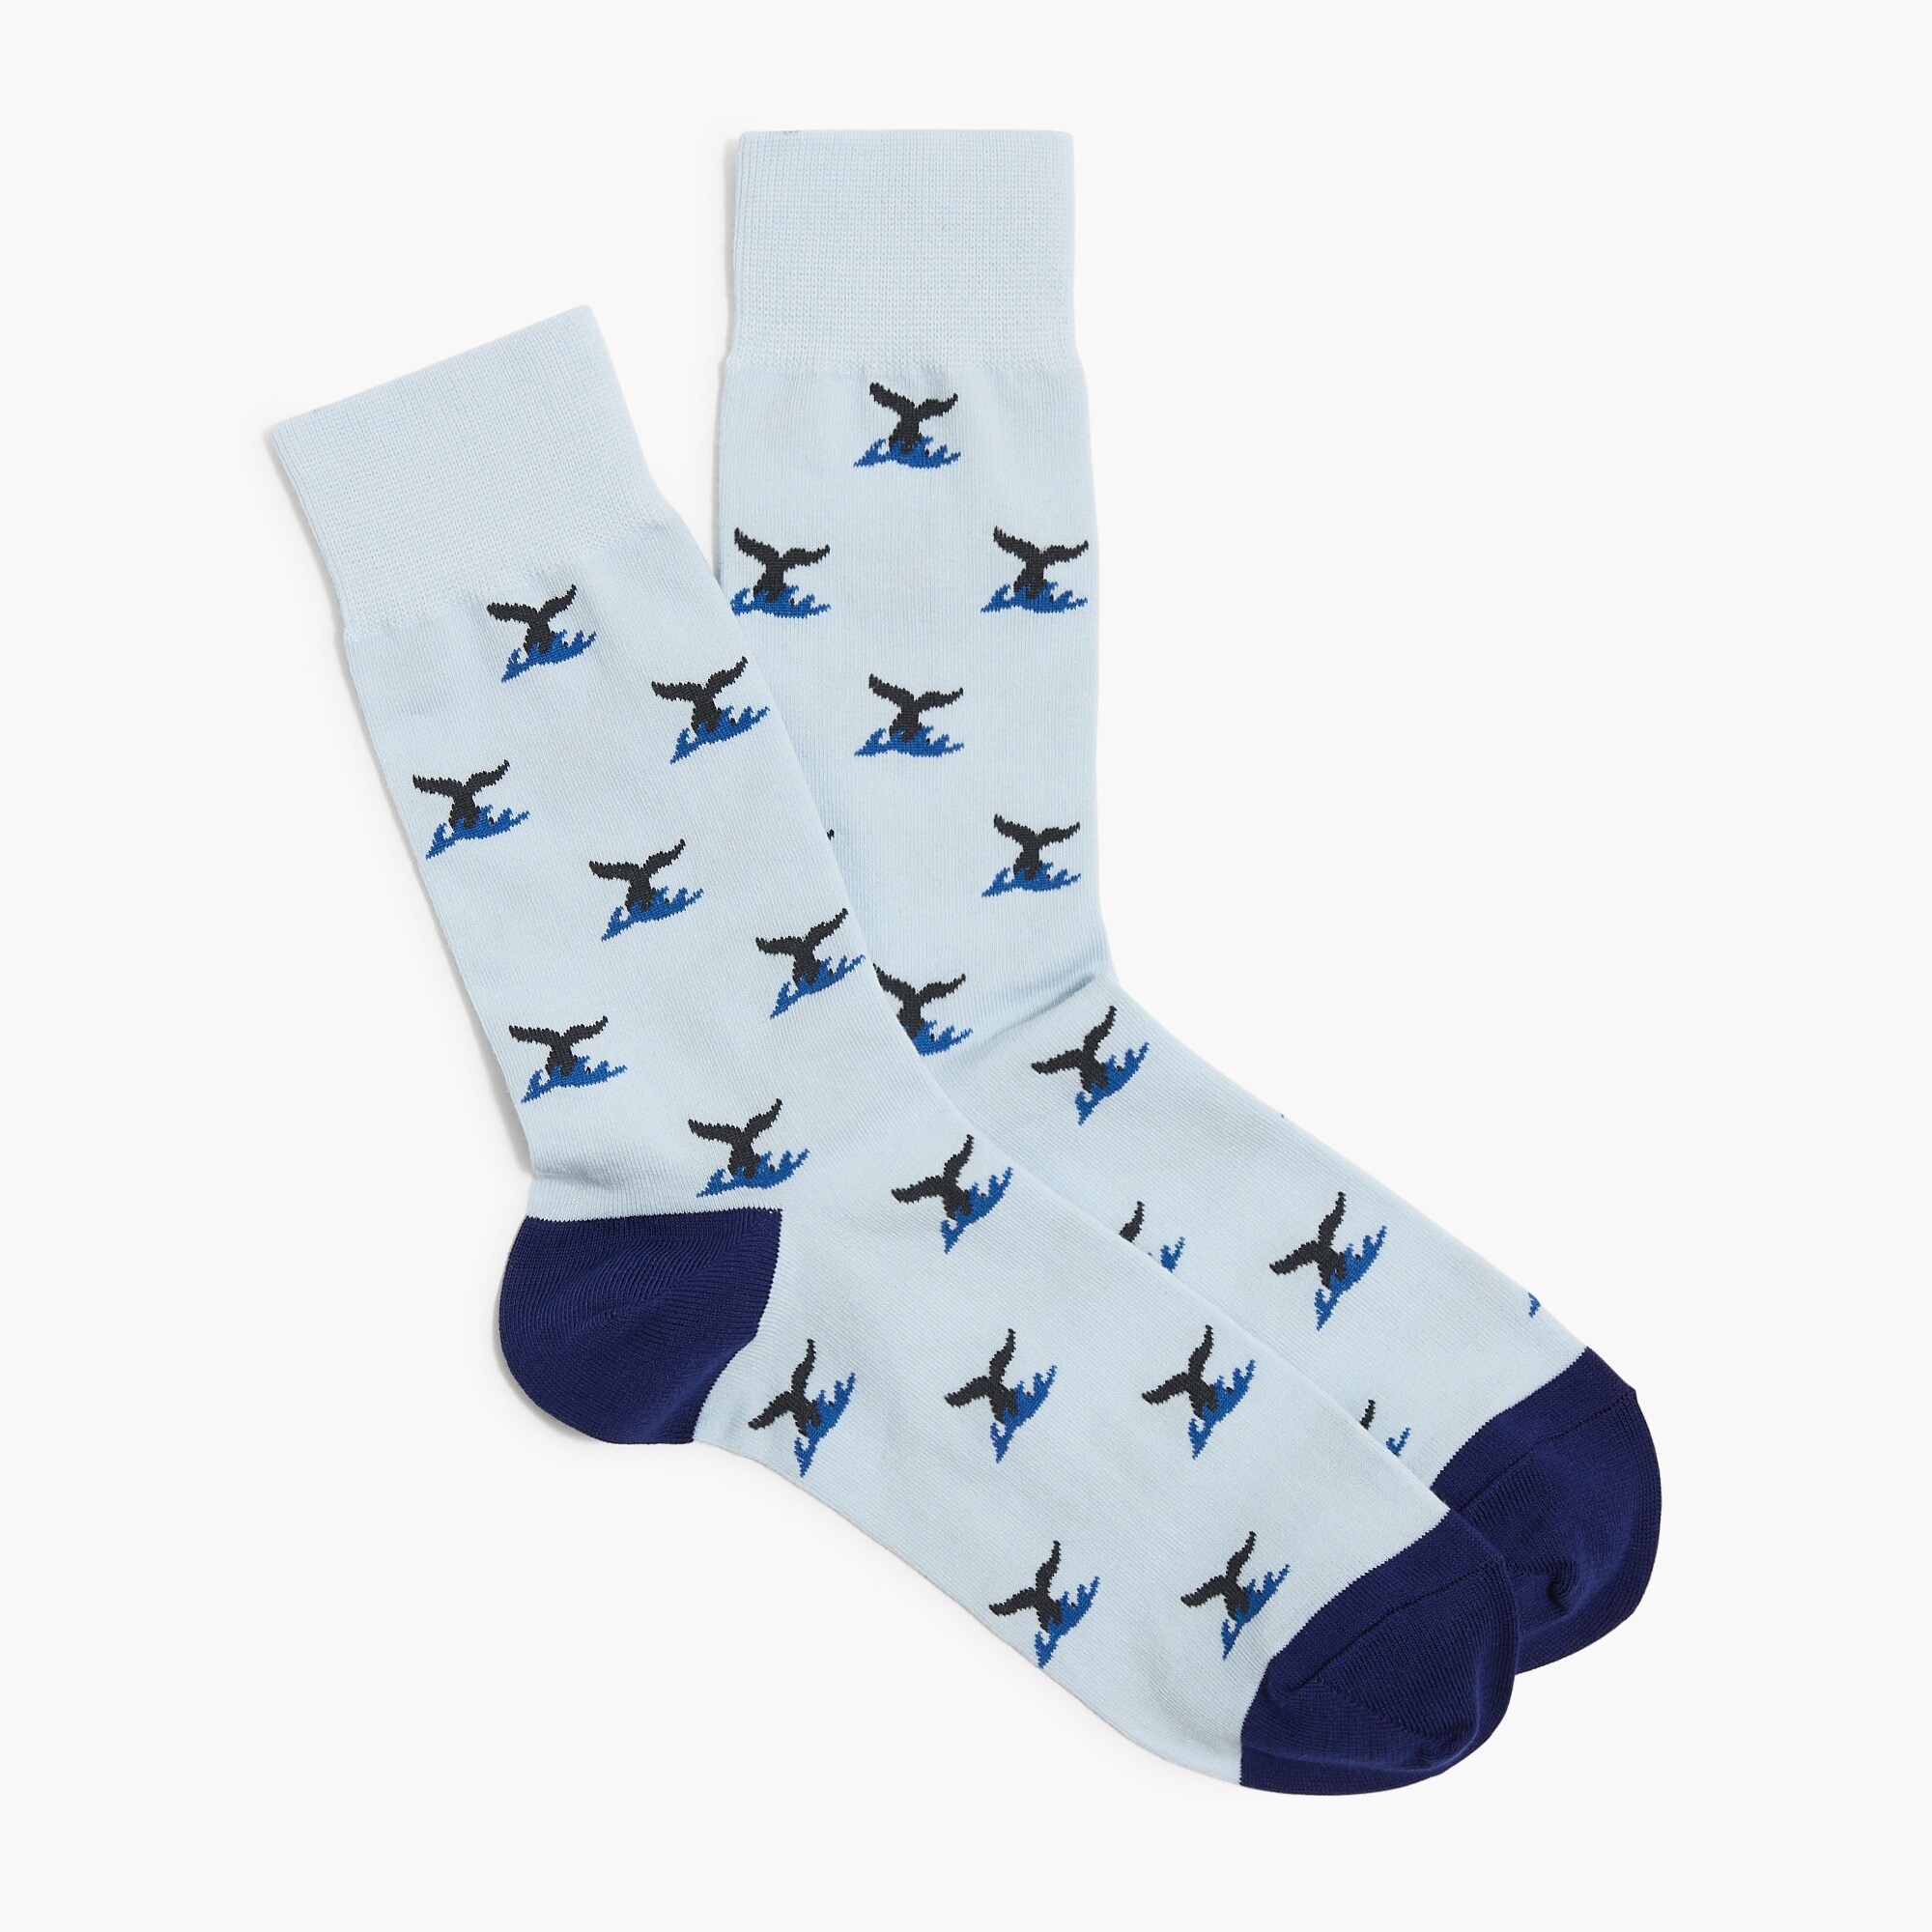  Whale socks